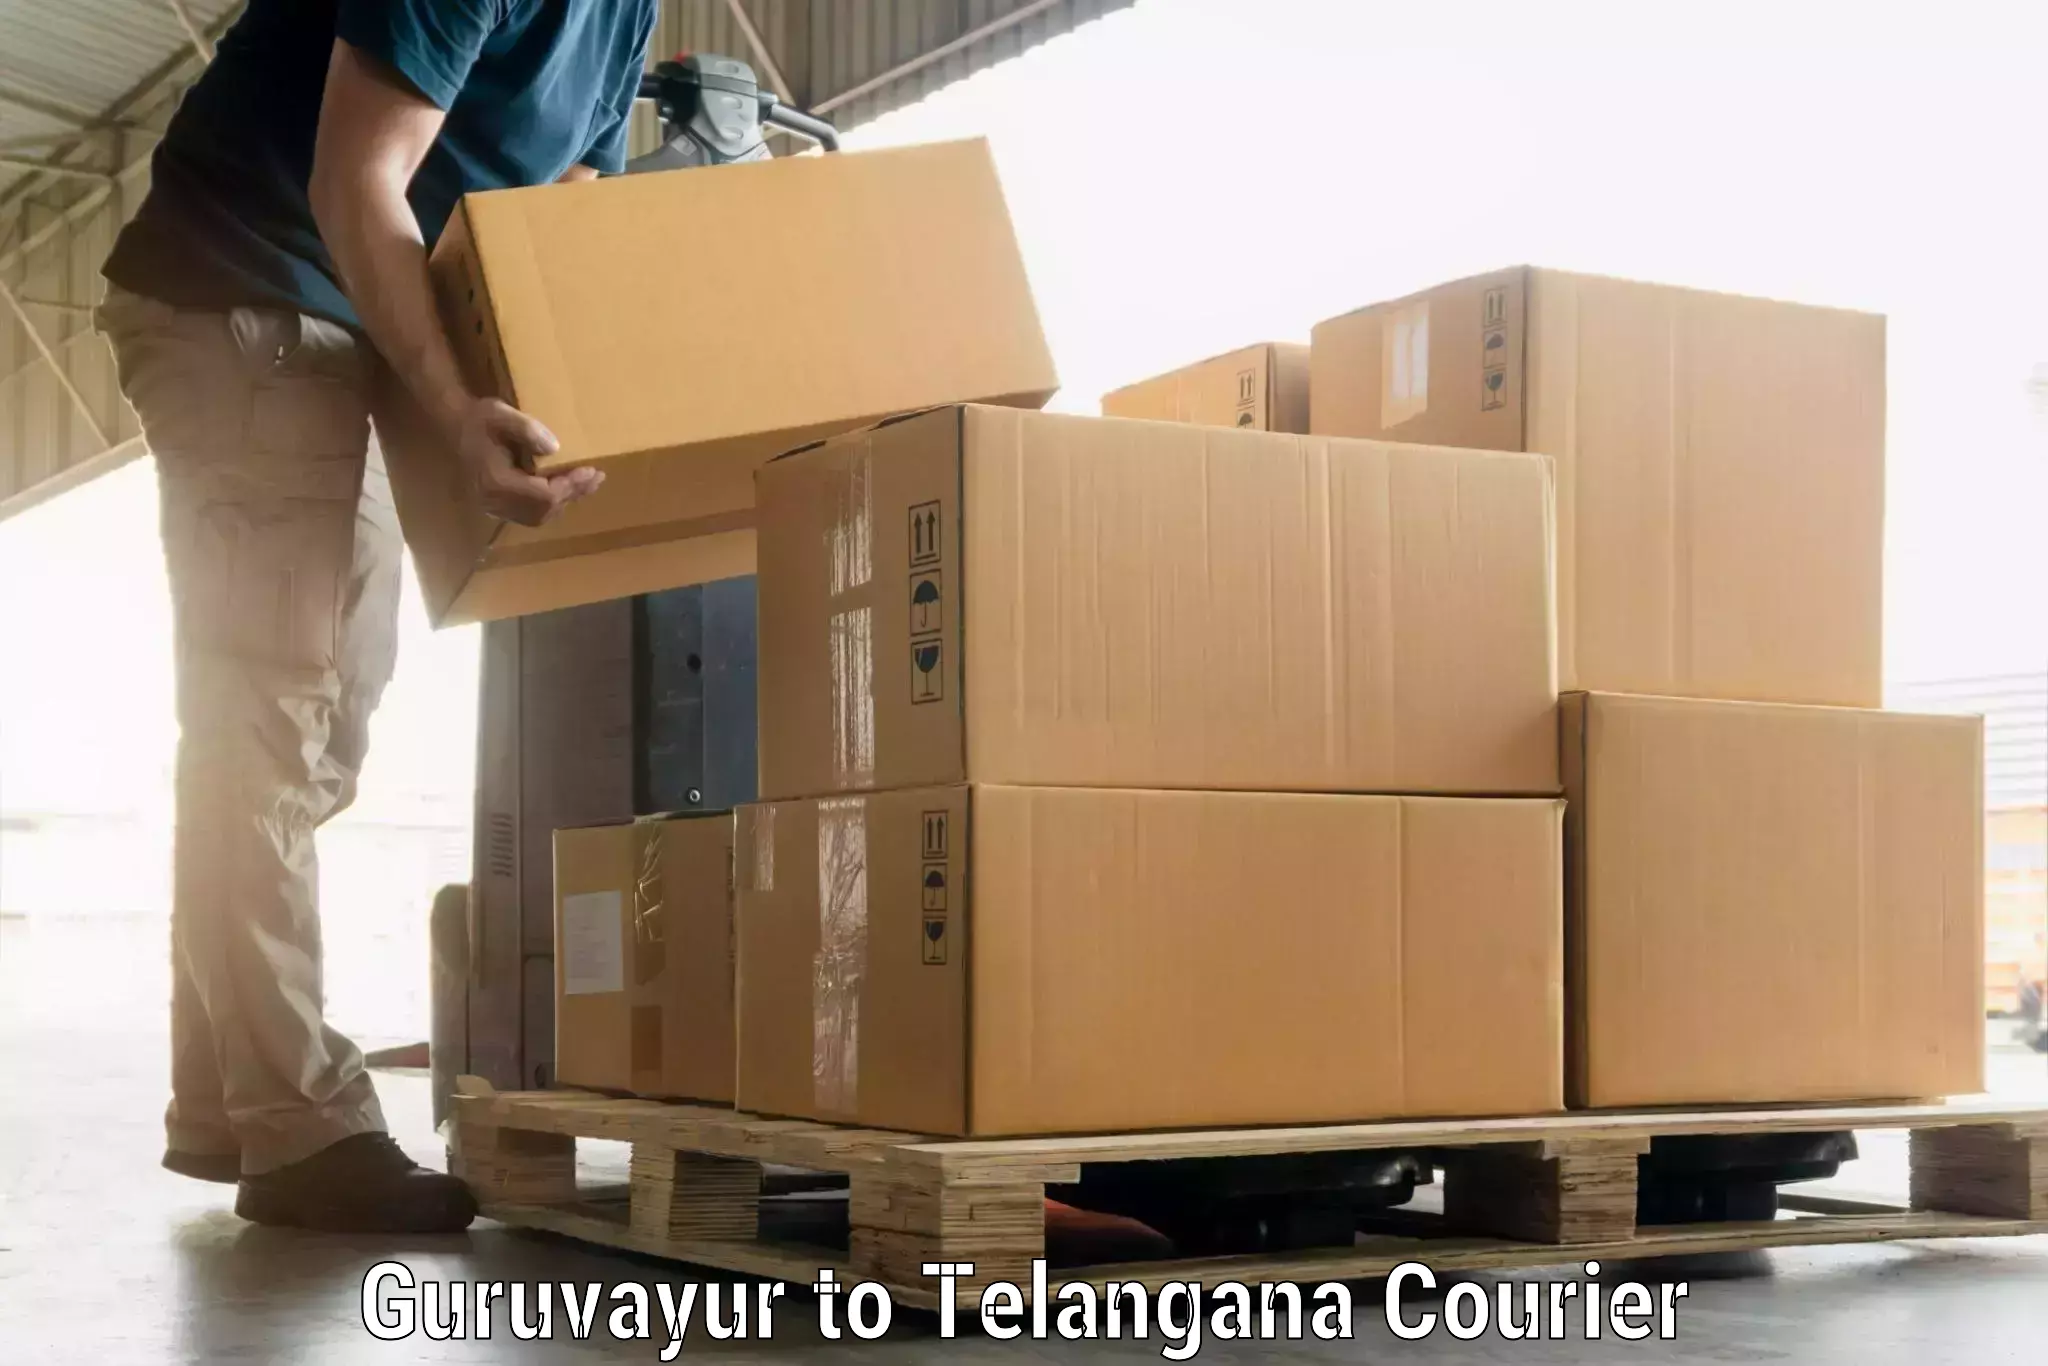 Efficient luggage delivery in Guruvayur to Kosgi